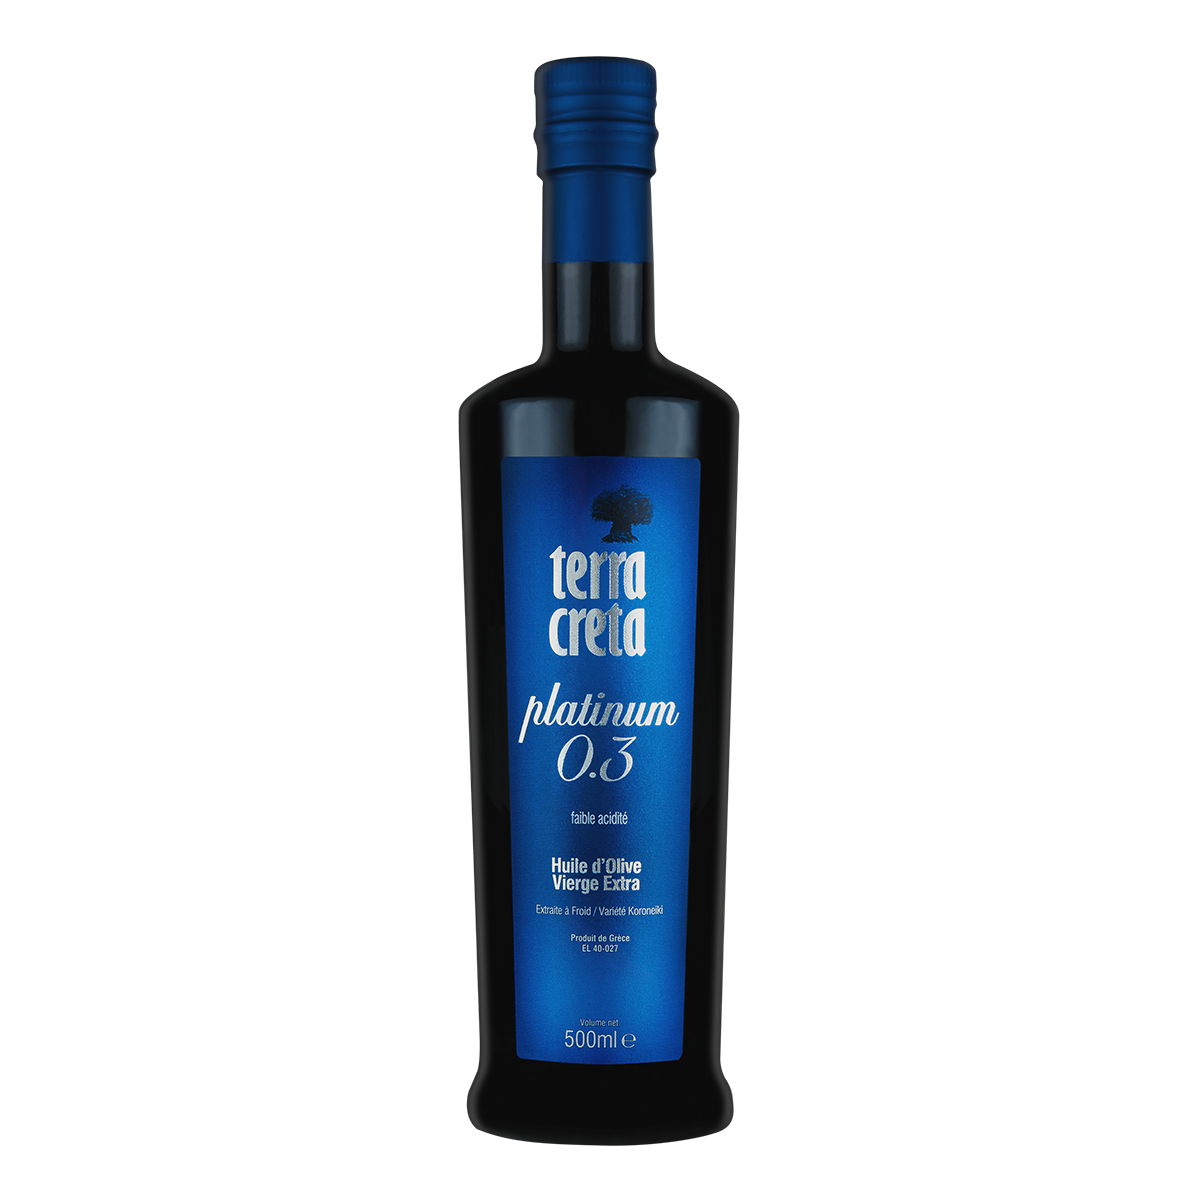 Terra Creta  0,3 Platinum Ultra Low Acidity Olivenolie 500 ml